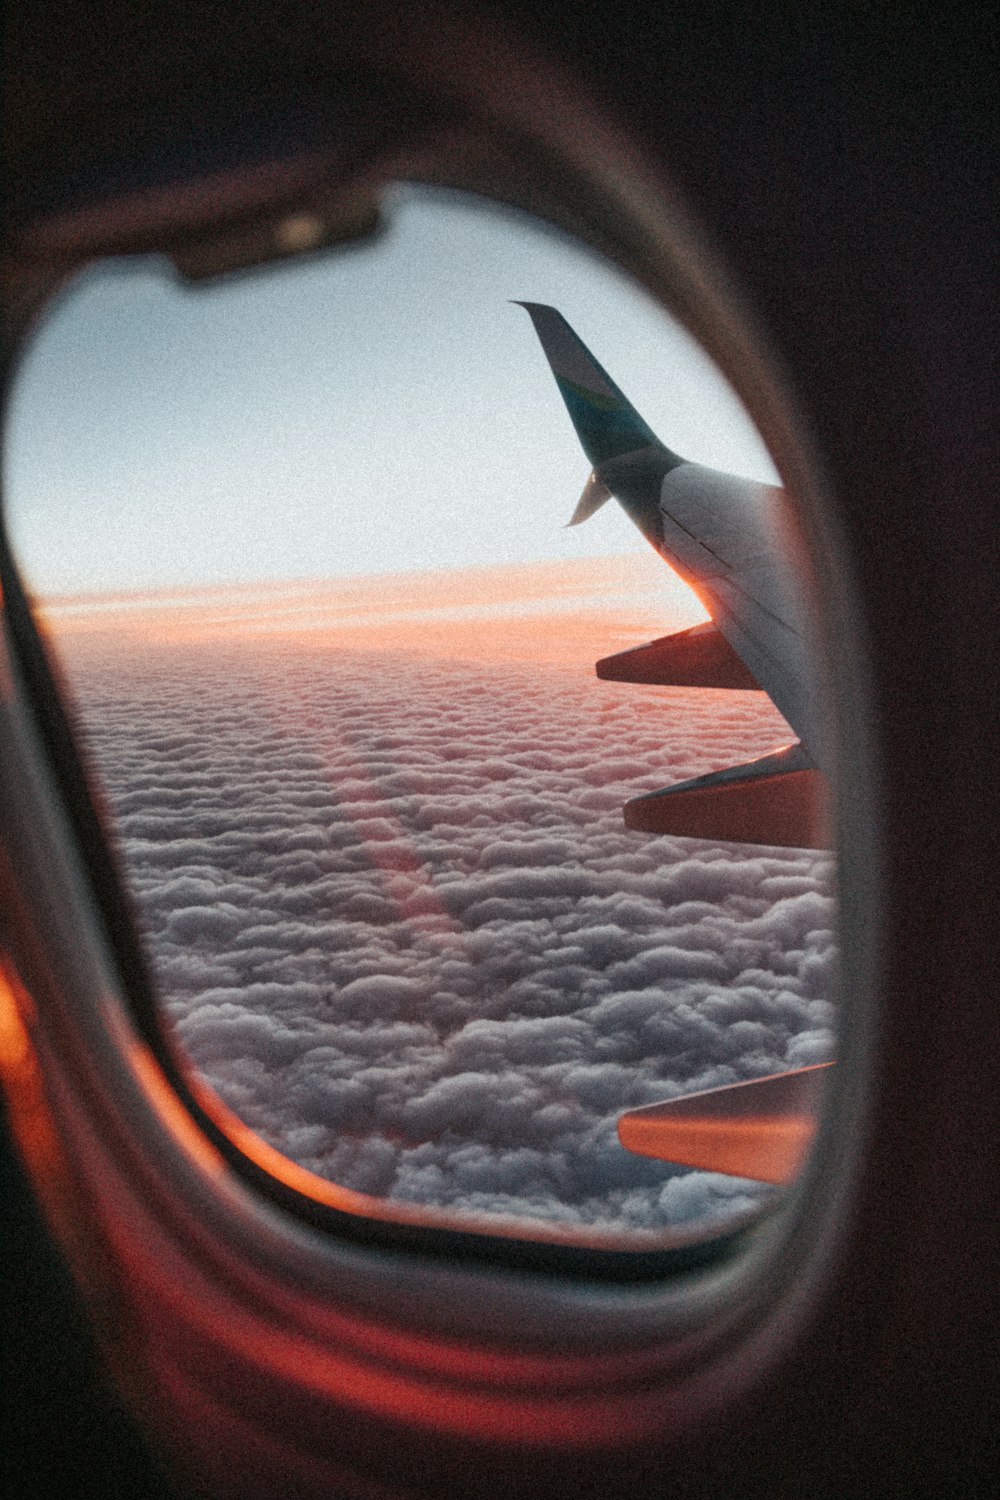 vista da janela do avião das nuvens durante o dia